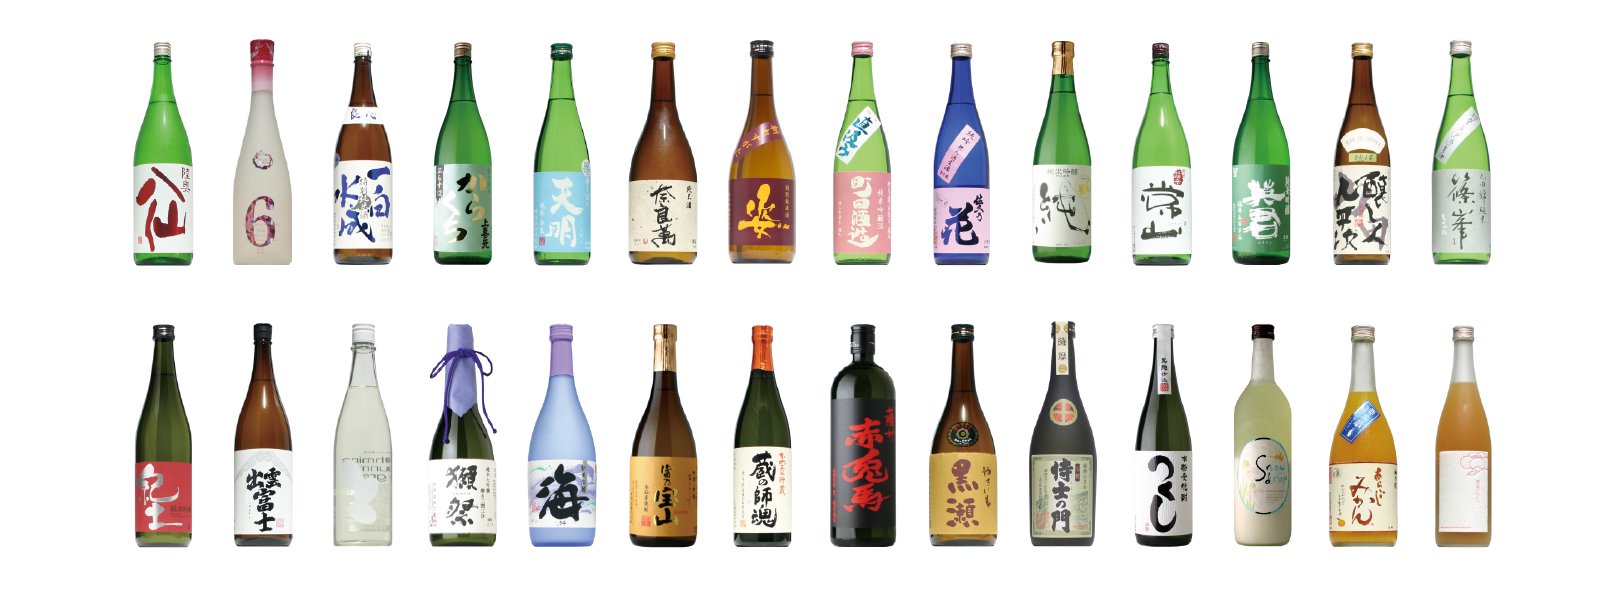 九州・沖縄 - 酒の秋山 | 日本酒・地酒・本格焼酎の通販